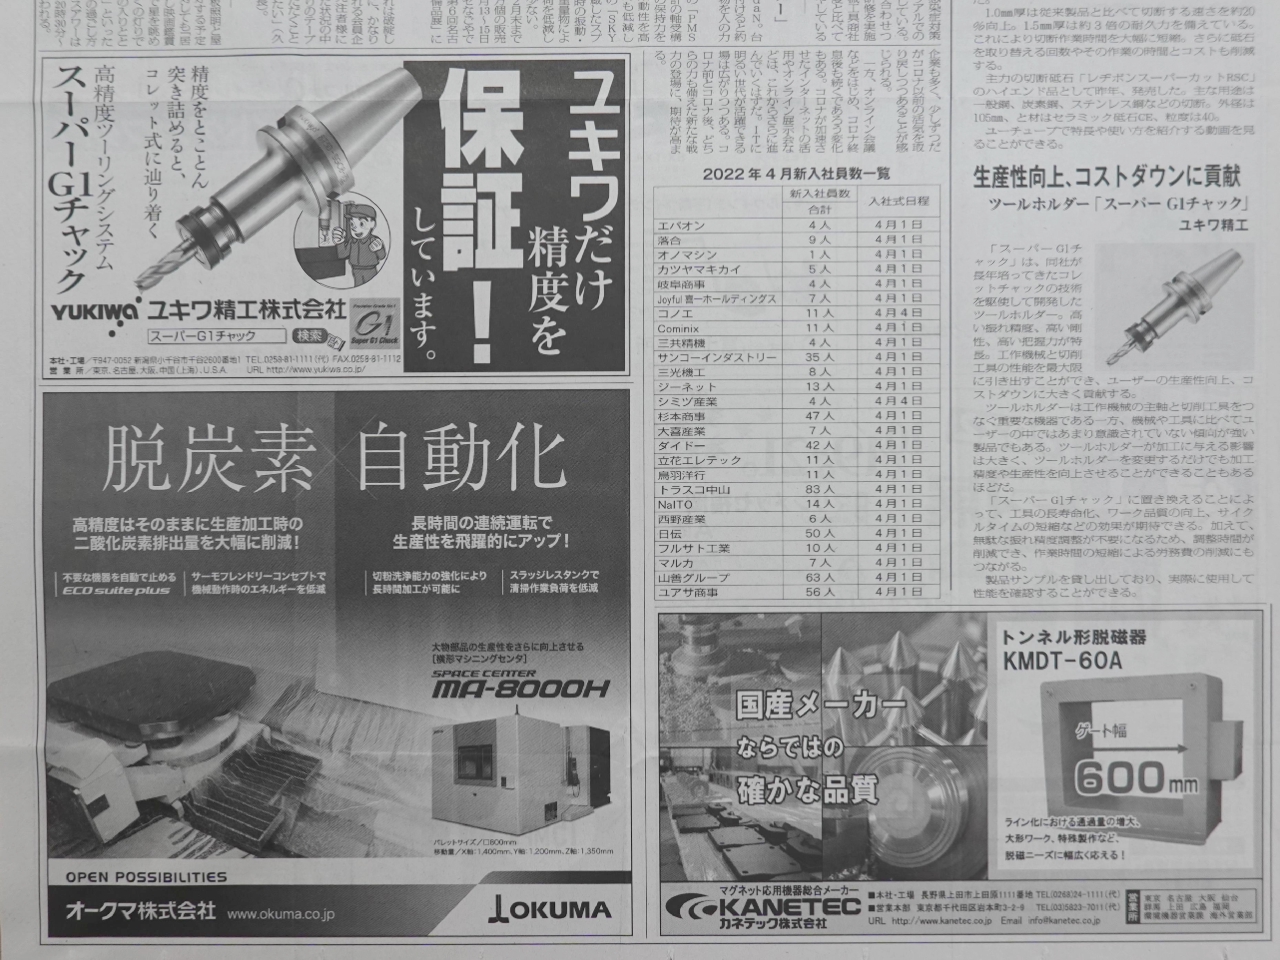 日本産機新聞『今年の戦略商品』にスーパーG1チャックが掲載されました。